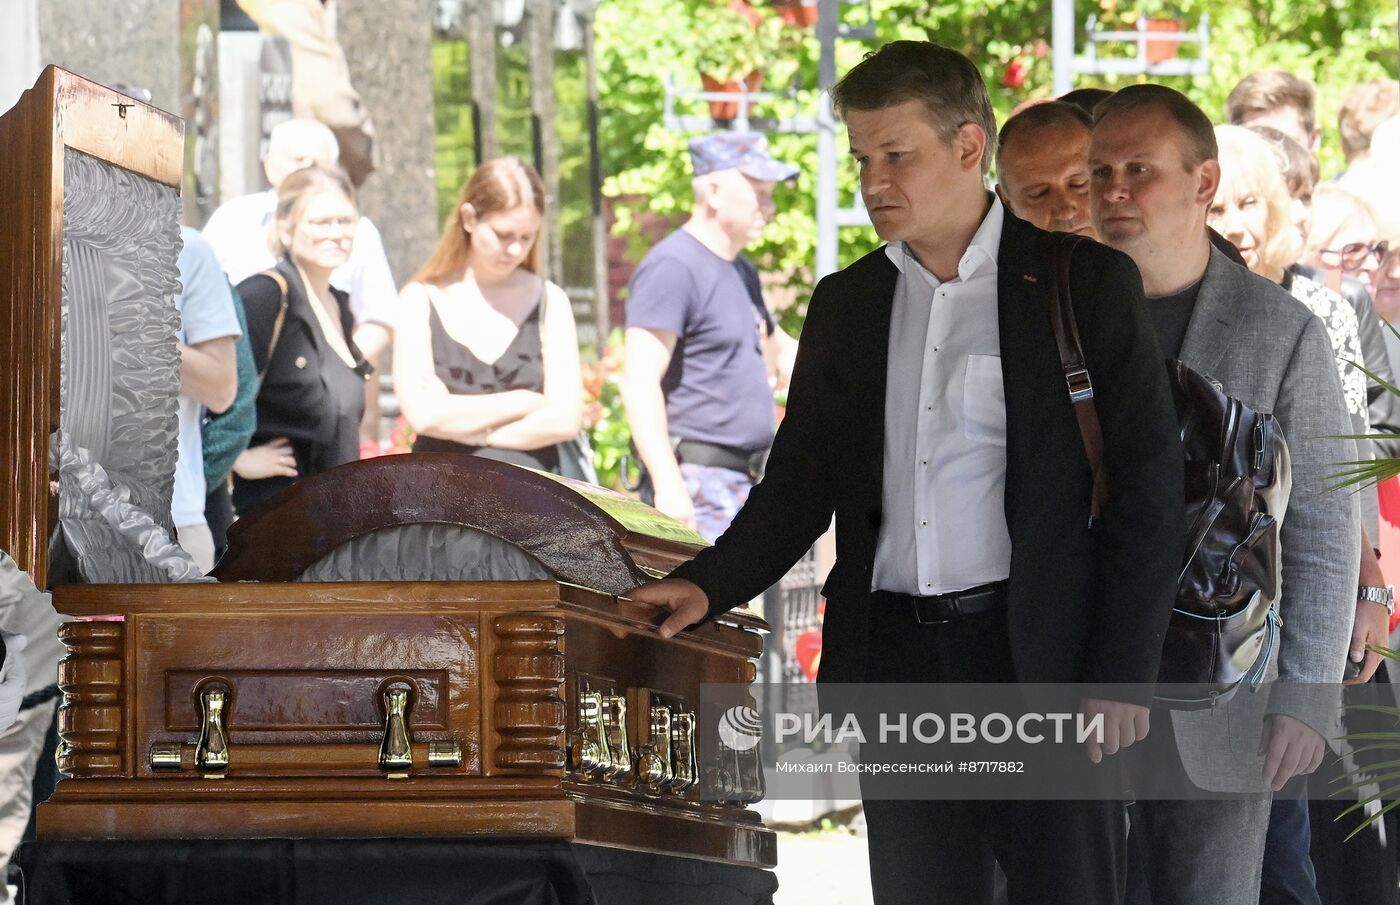 Похороны спортивного комментатора Анны Дмитриевой